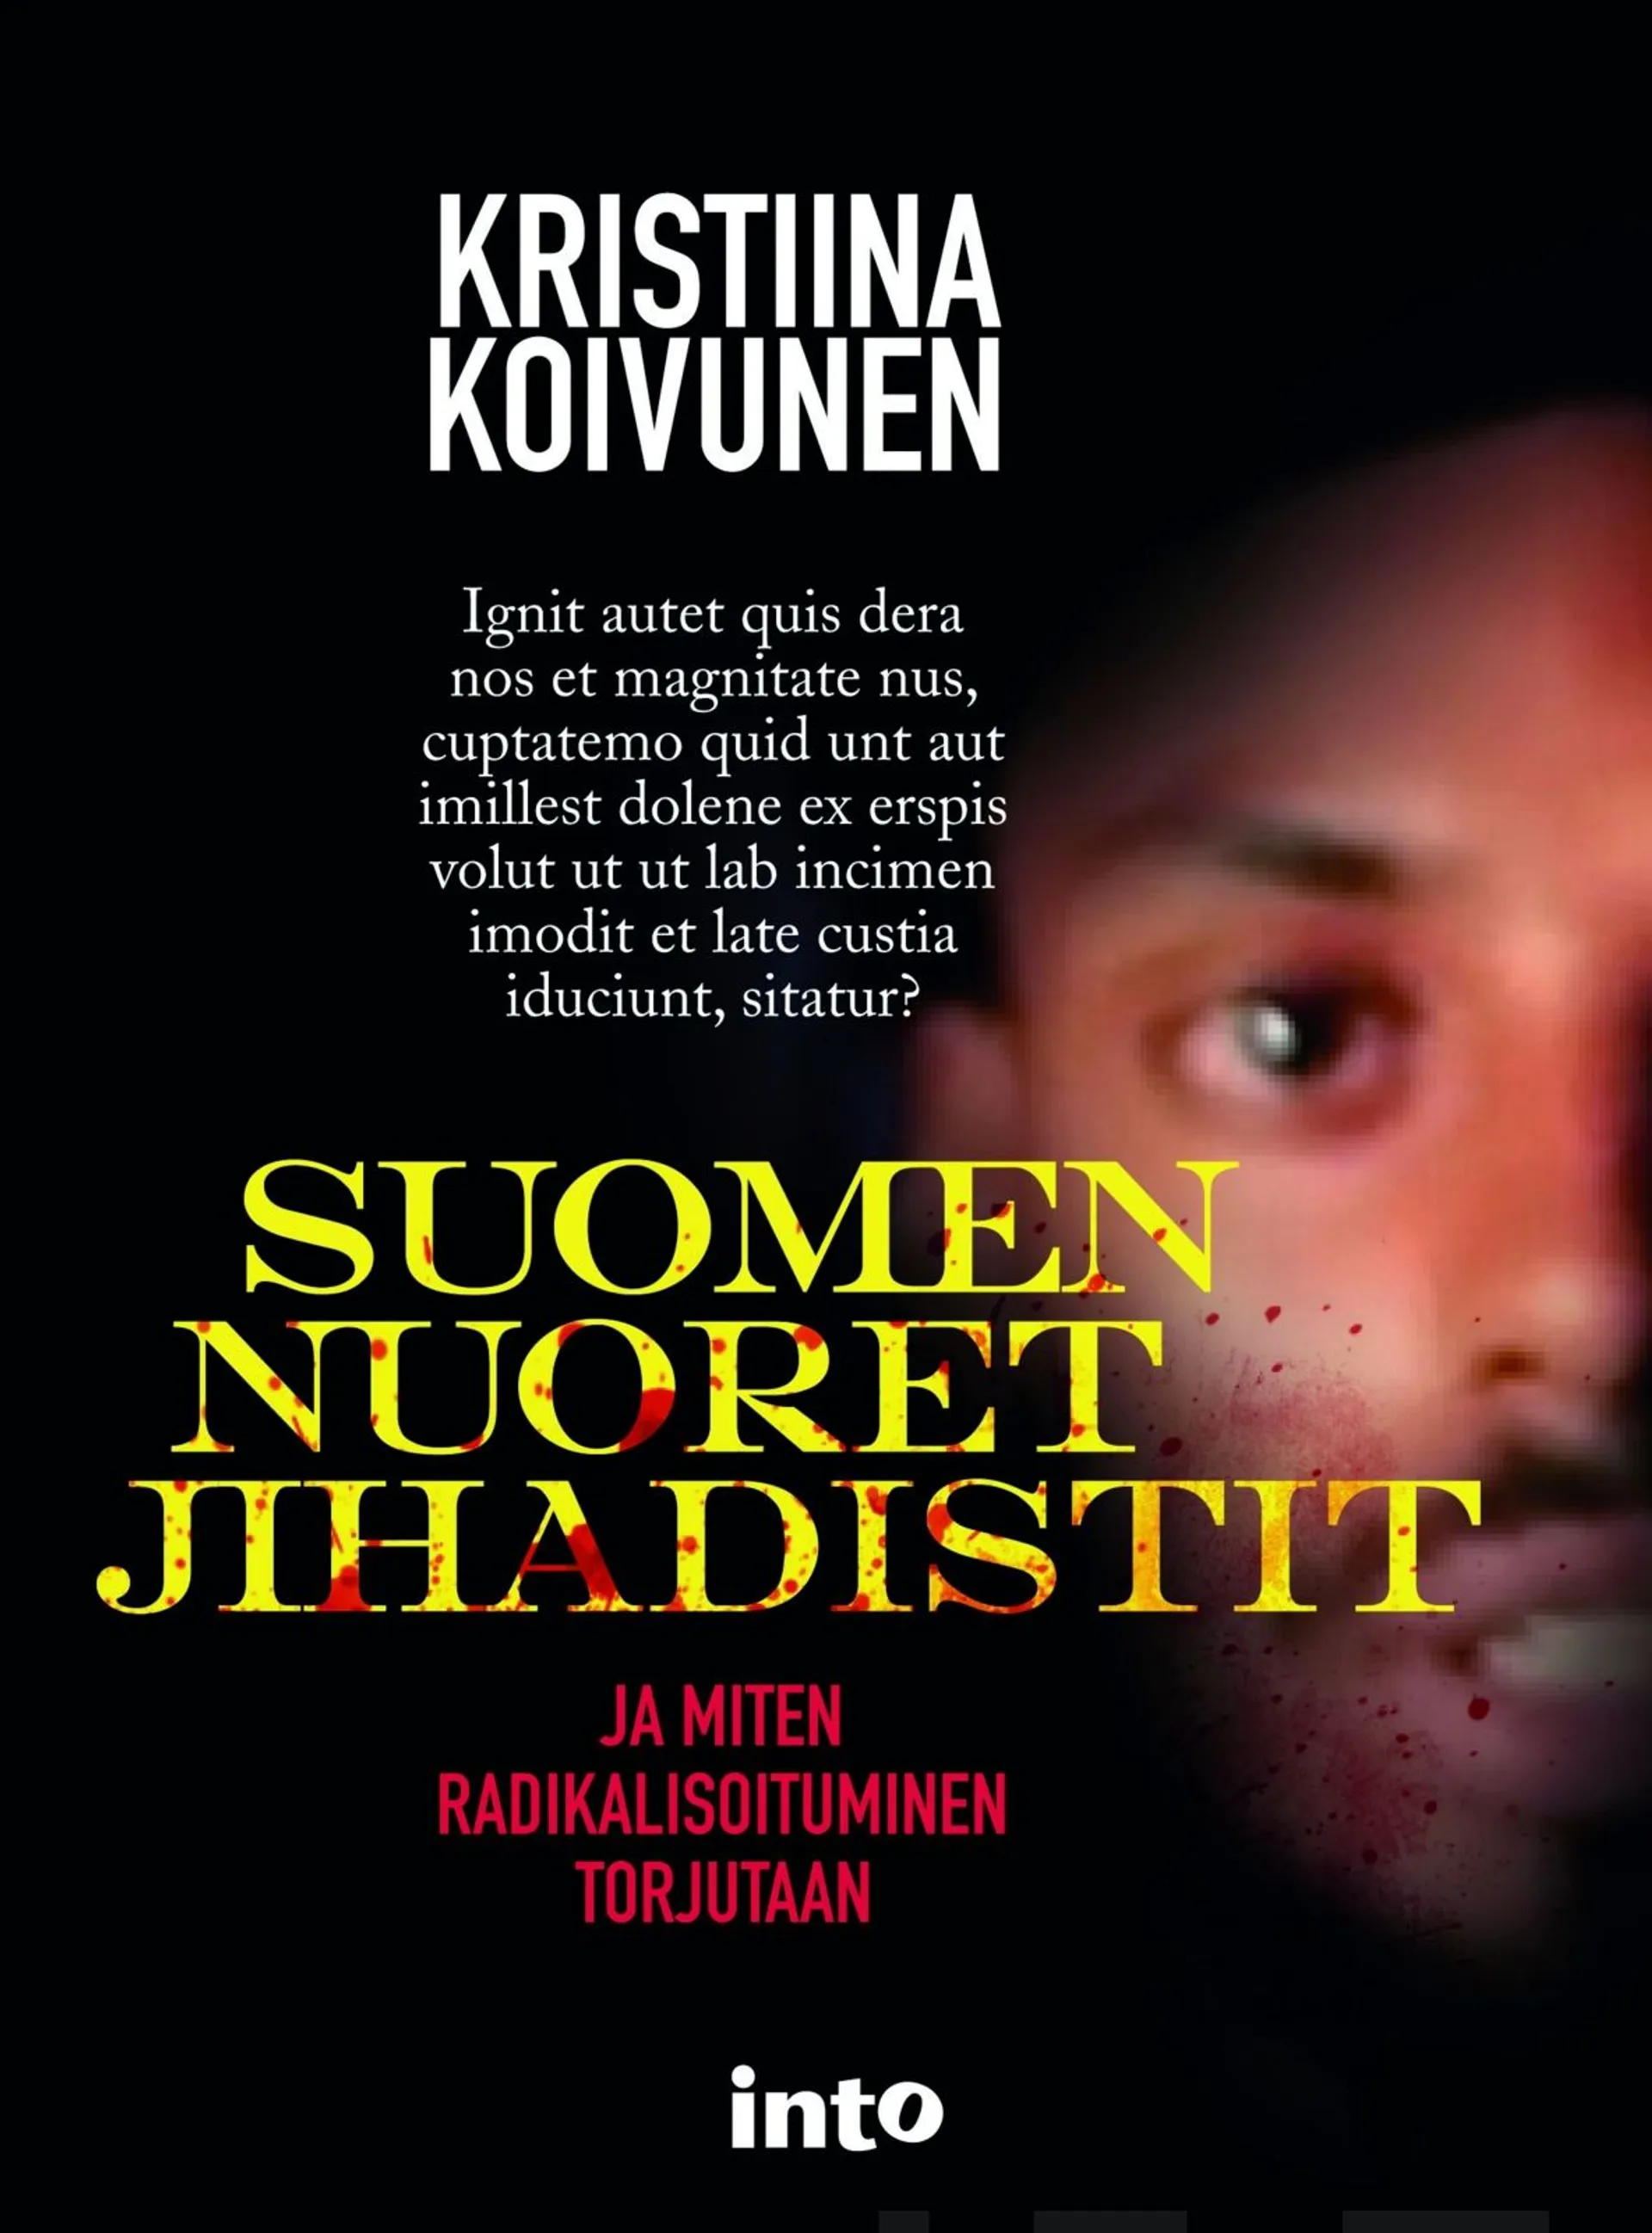 Koivunen, Suomen nuoret jihadistit - ja miten radikalisoituminen torjutaan?